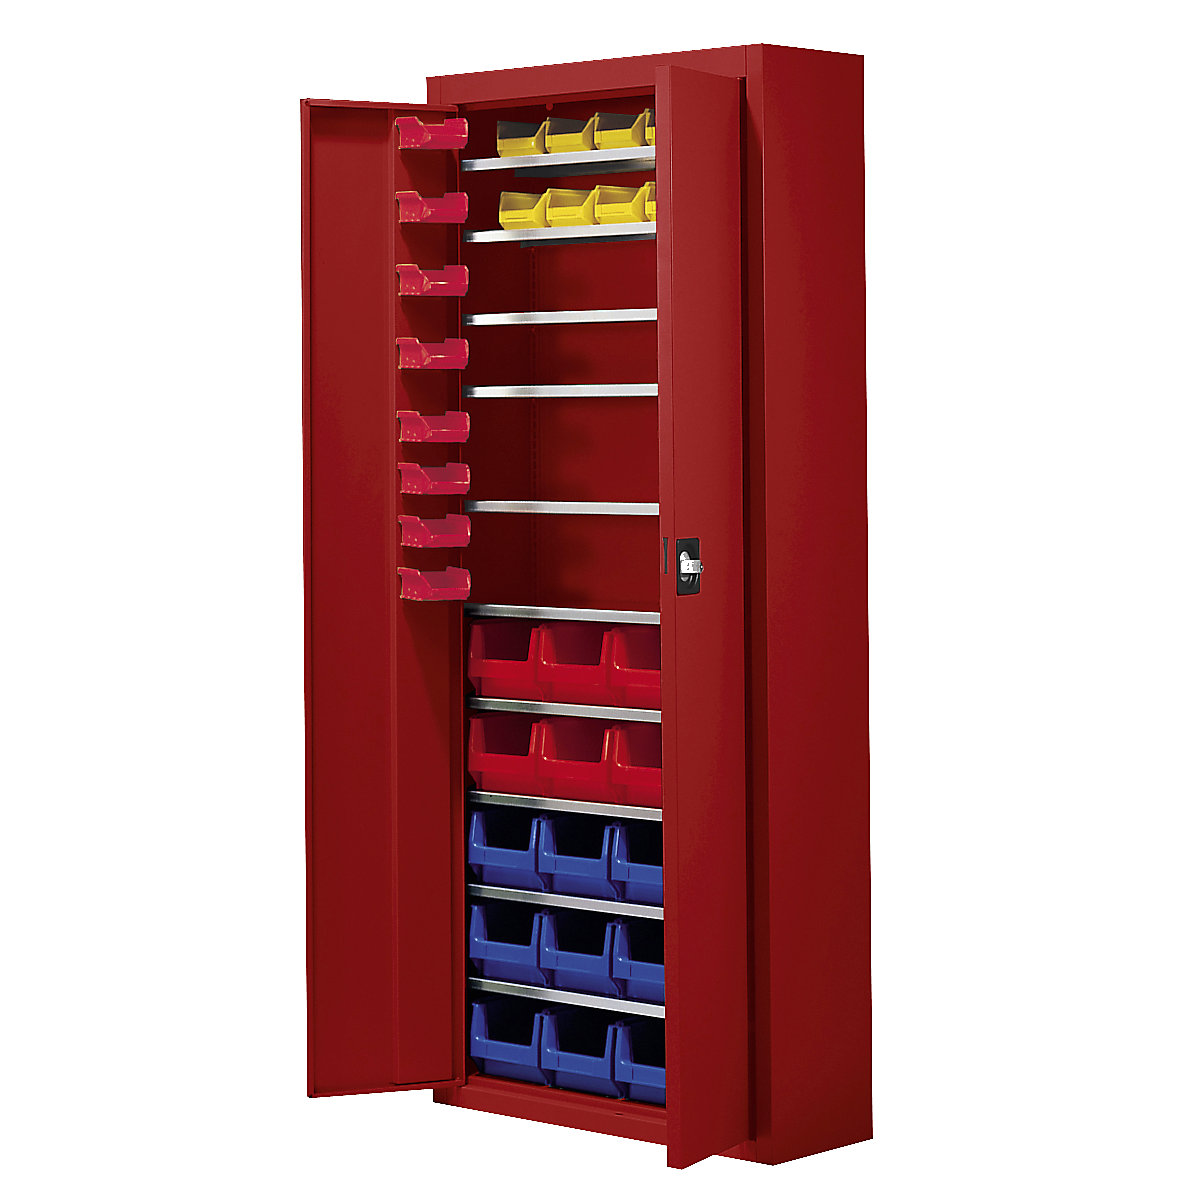 Skladišni ormar s otvorenim skladišnim kutijama – mauser, VxŠxD 1740 x 680 x 280 mm, 48 kutija, u jednoj boji, u vatreno crvenoj boji, od 3 kom.-6